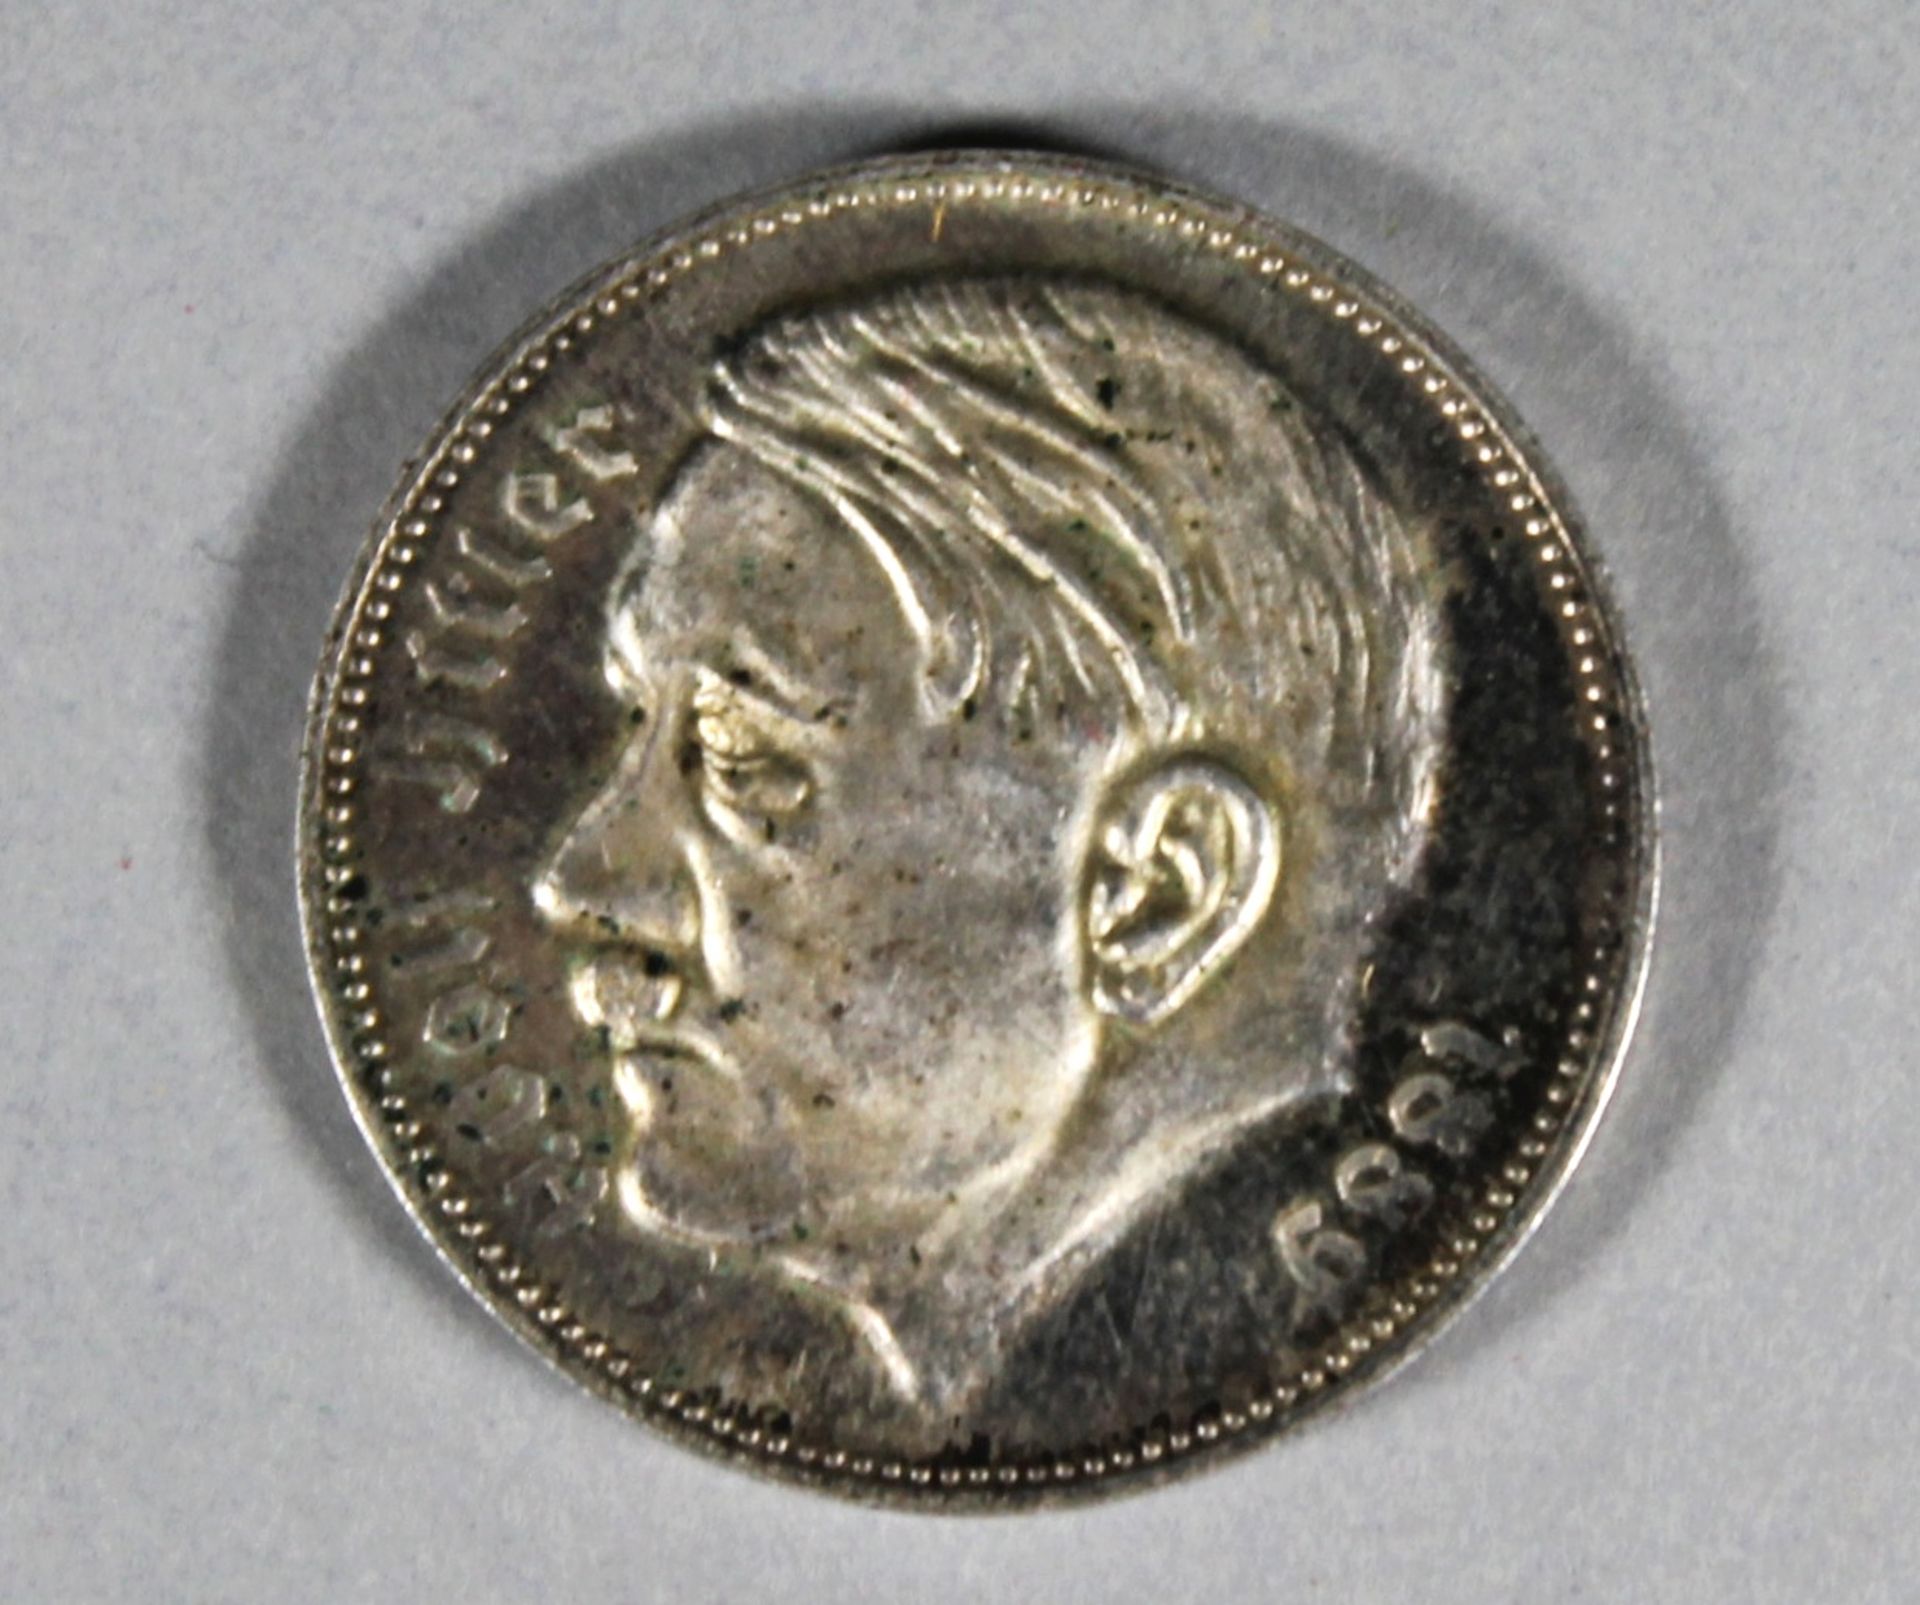 1 kleine Medaille "Adolf Hitler Reichsmark 1938"